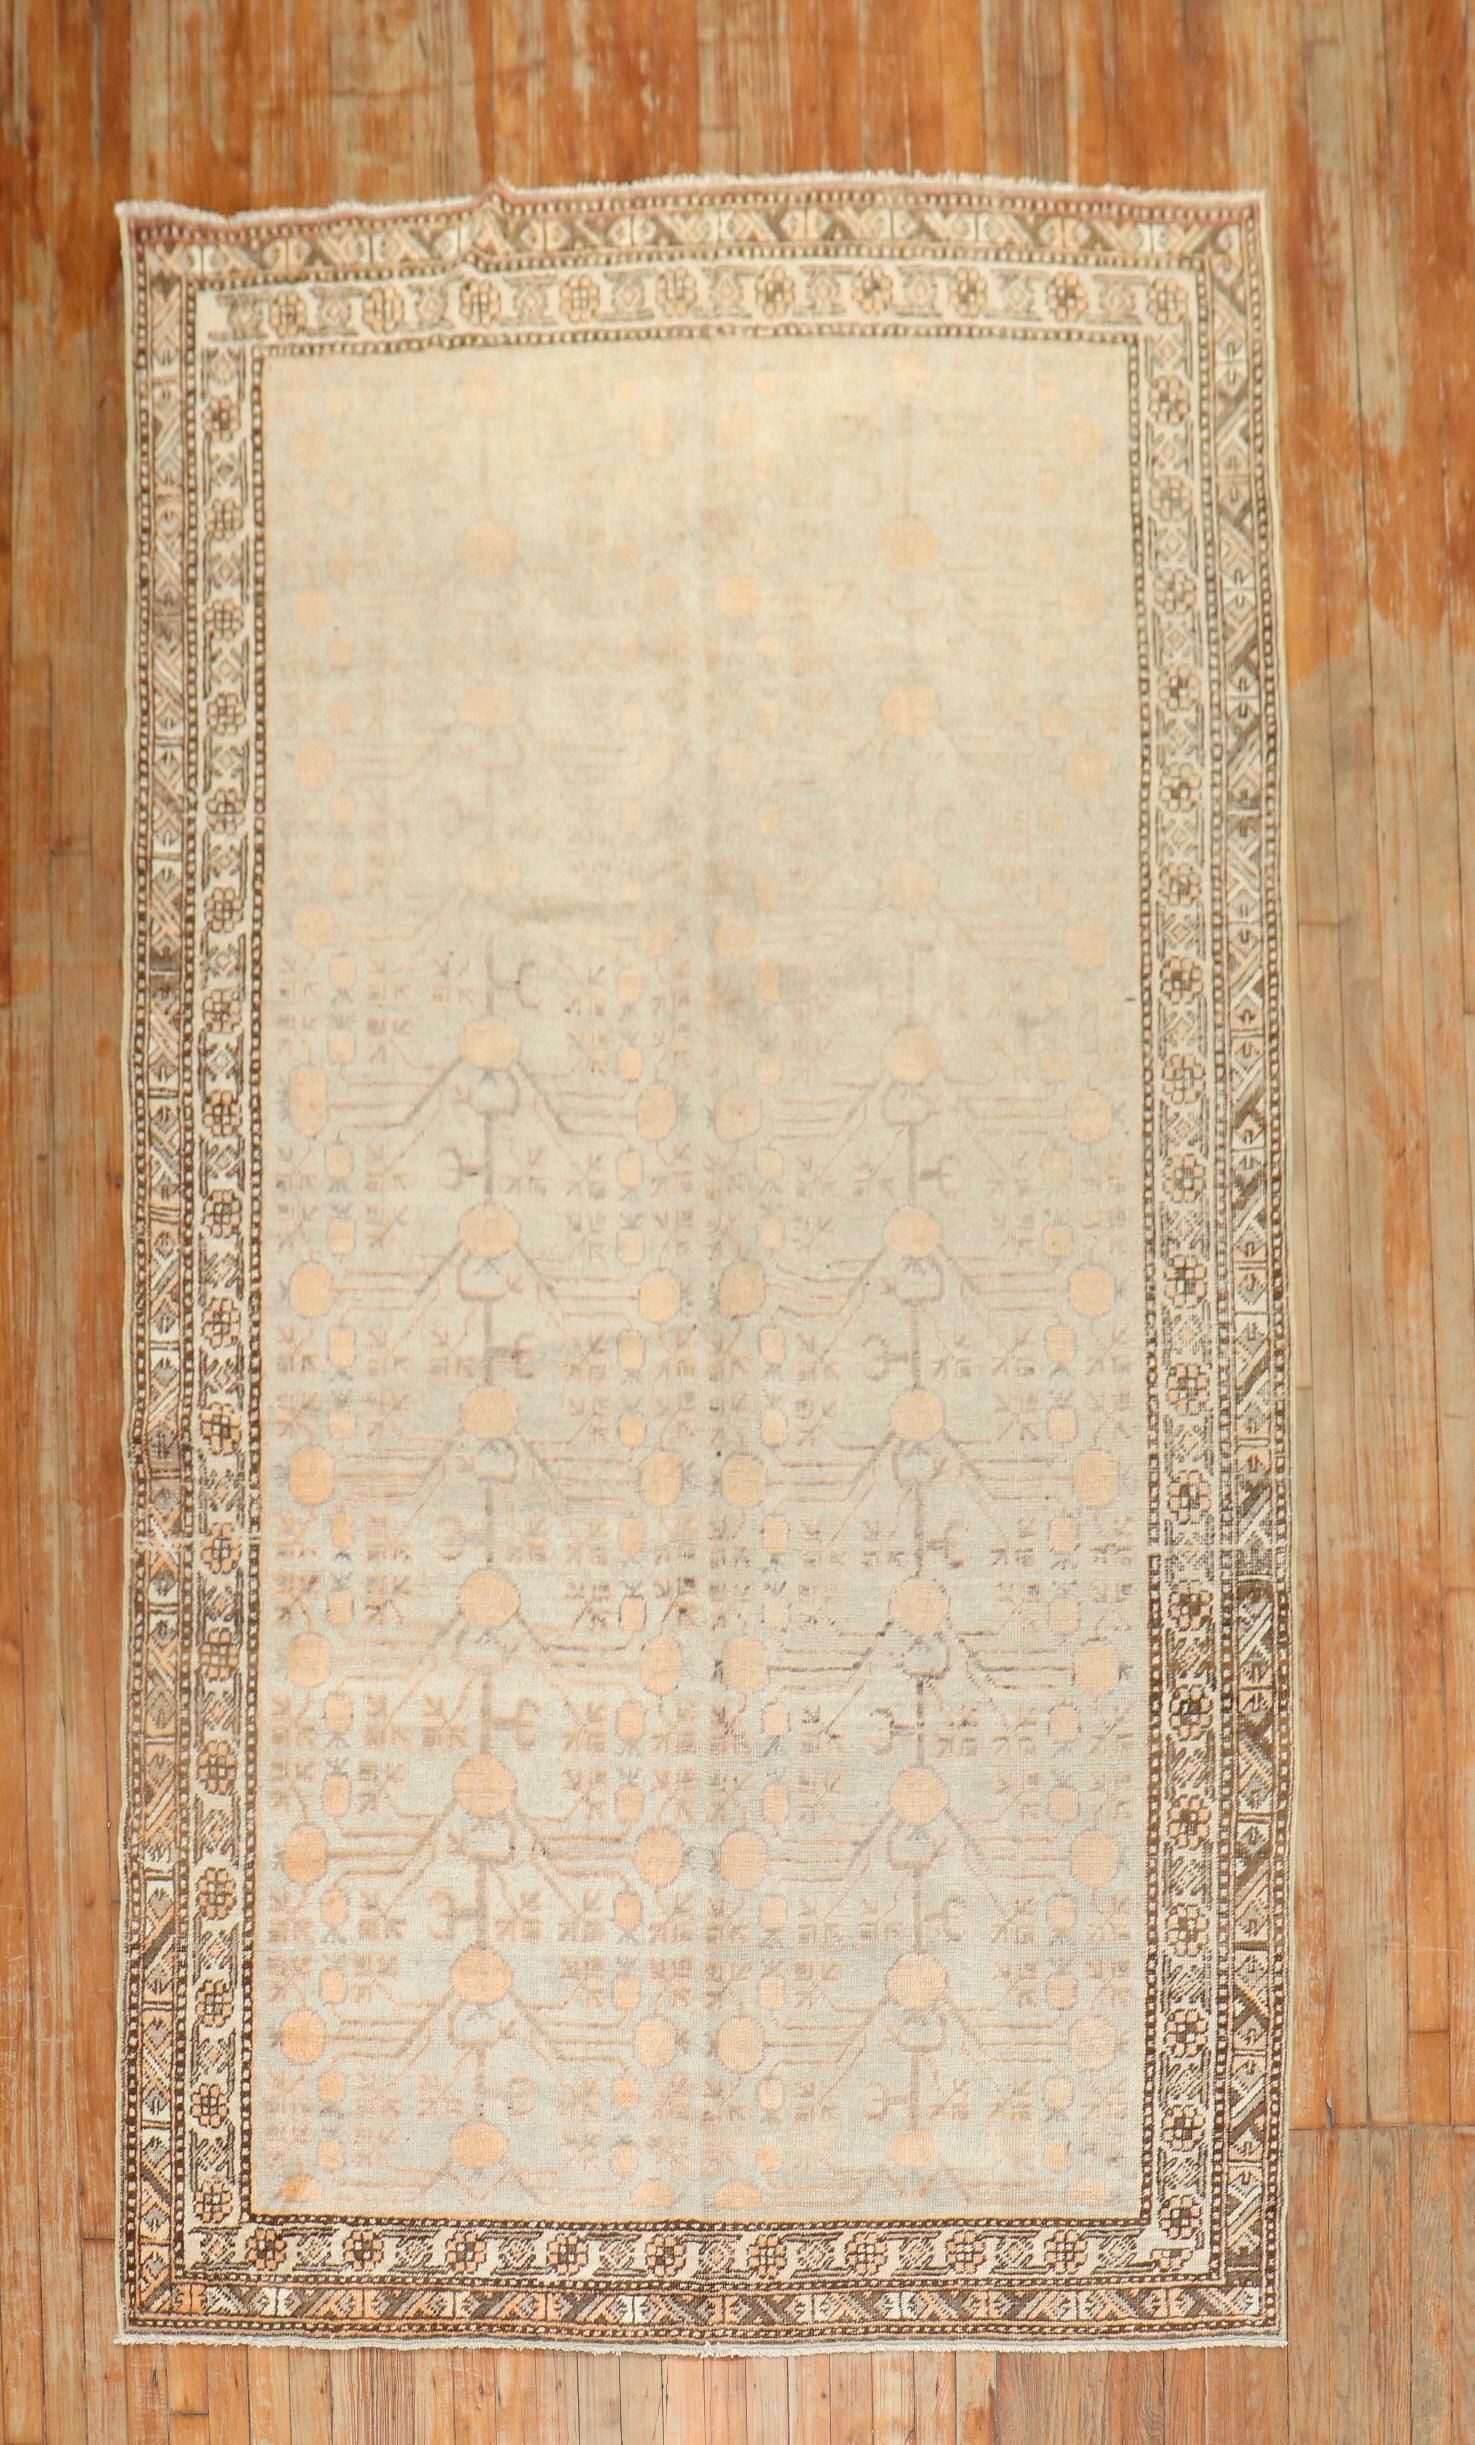 Antiker Khotan-Teppich aus dem frühen 20. Jahrhundert mit einem pfirsichfarbenen Granatapfelmotiv auf einem hellen, keladongrünen Feld

Maße: 5'5'' x 10'3''.